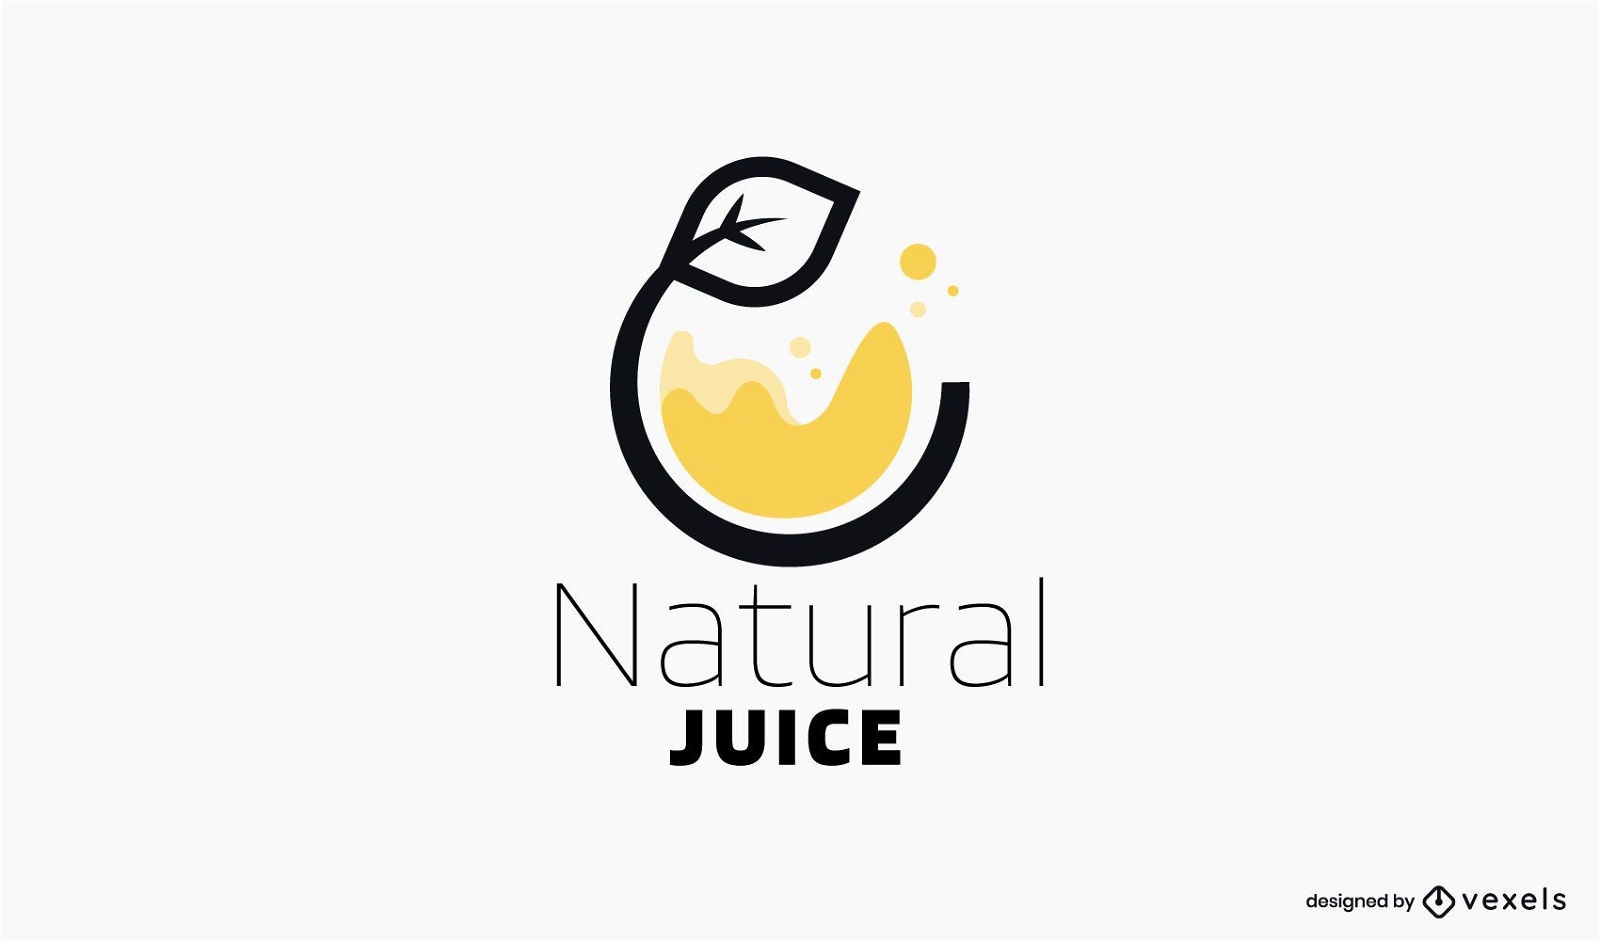 Natural juice logo template